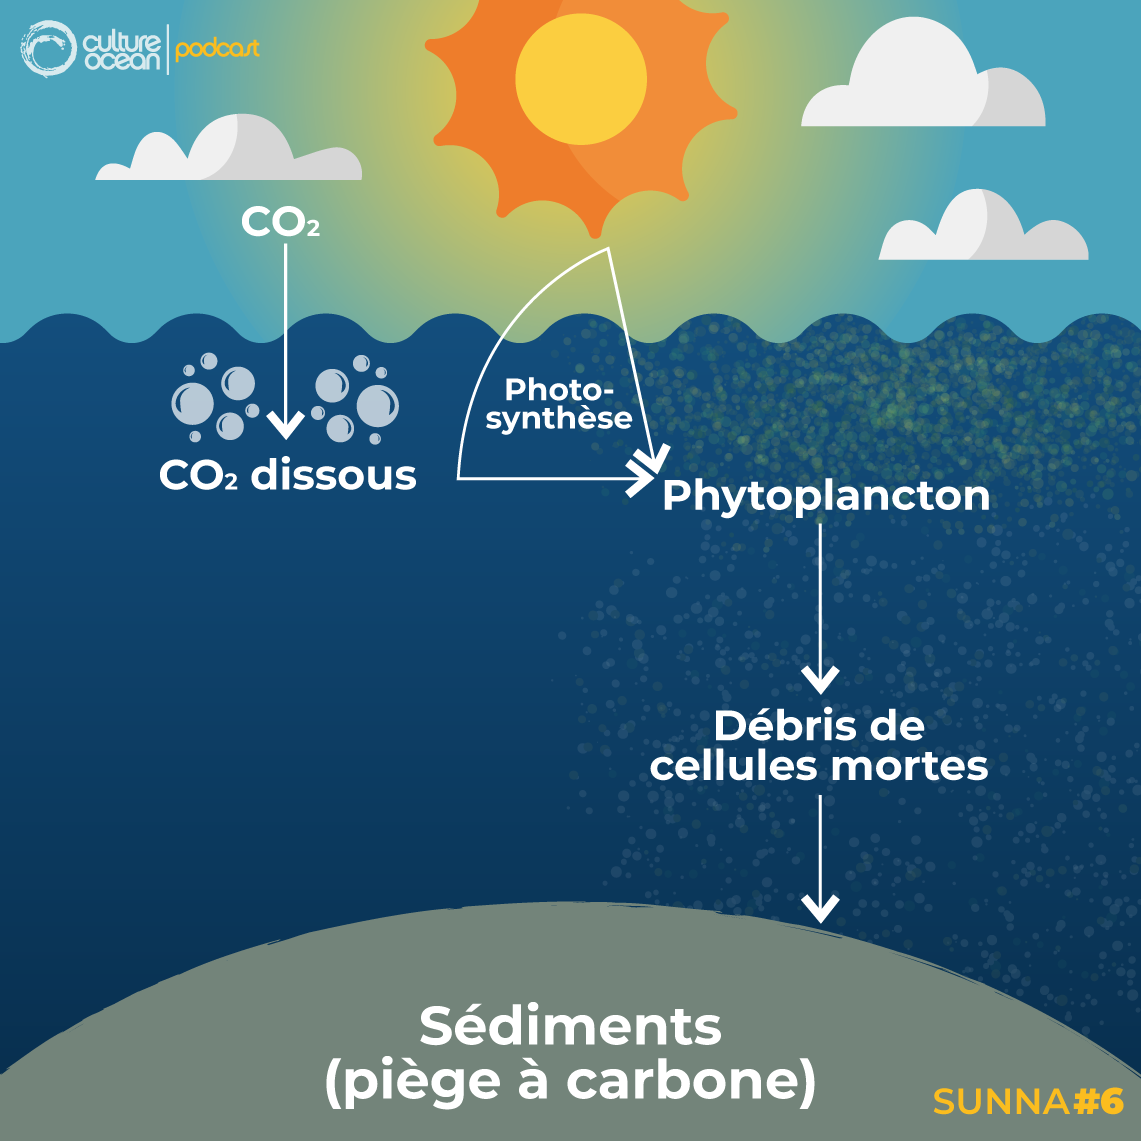 Les activités humaines rejettent des tonnes de CO2 dans l’atmosphère. Une partie de celui-ci passe dans l’océan et alimente le phytoplancton (et par conséquent, le reste de la chaîne alimentaire !). Une partie des déjections et organismes morts tombent au fond de l’océan et sont piégés dans les sédiments, ce qui emprisonne du carbone ! Ce processus, appelé pompe à carbone biologique, participe à limiter la quantité de CO2 présent dans l’atmosphère et ralentit le changement climatique. Crédits : T. Boniface d’après une idée de T. Sciandra